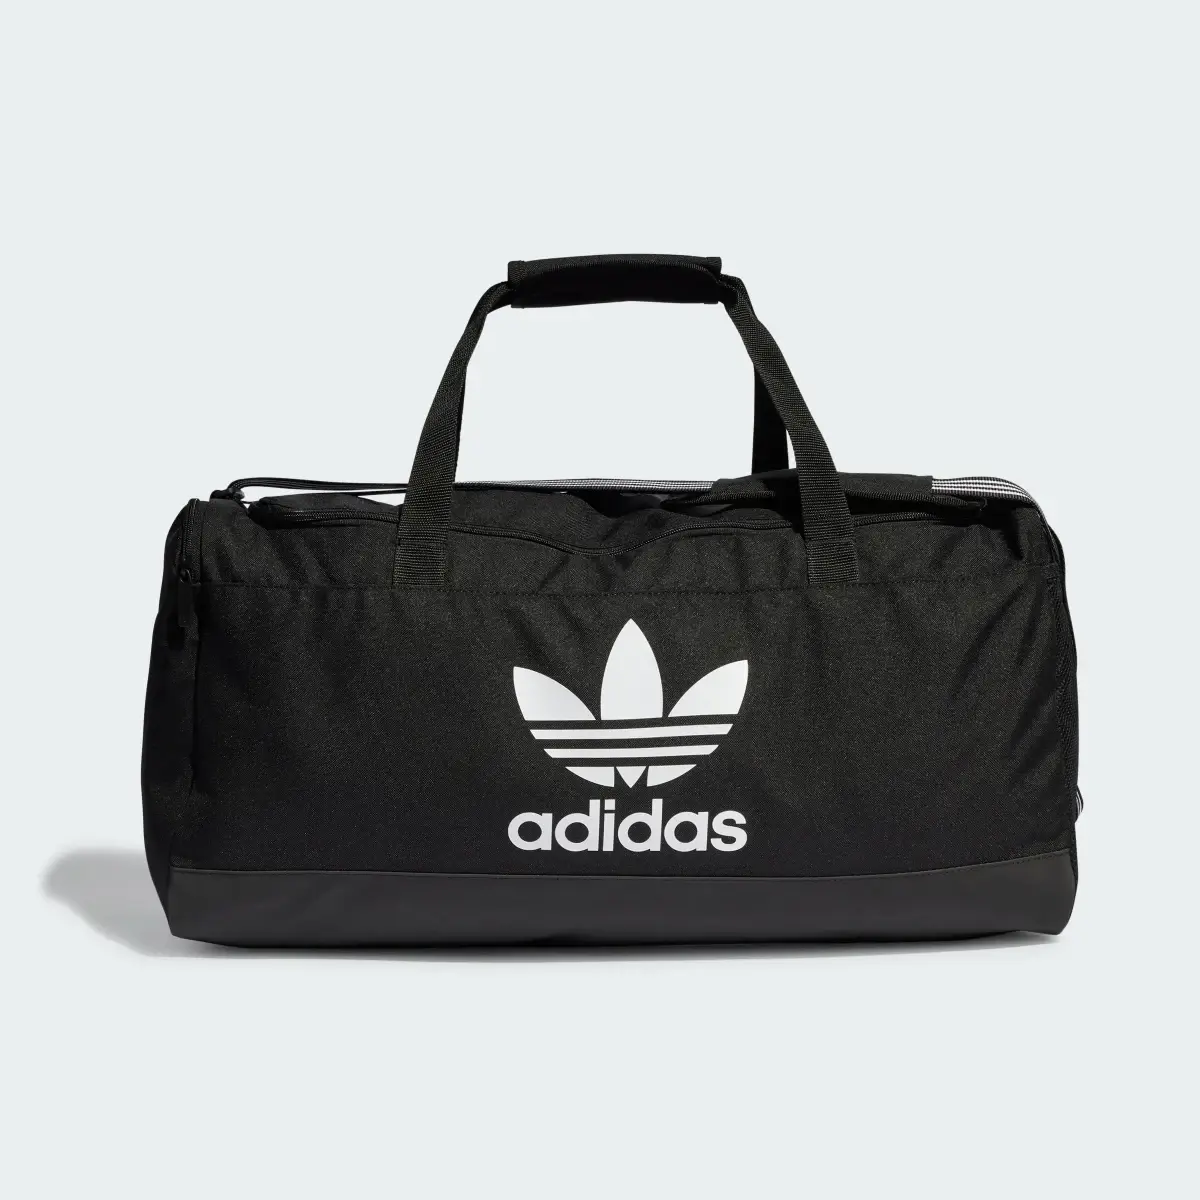 Adidas Duffel Bag. 2